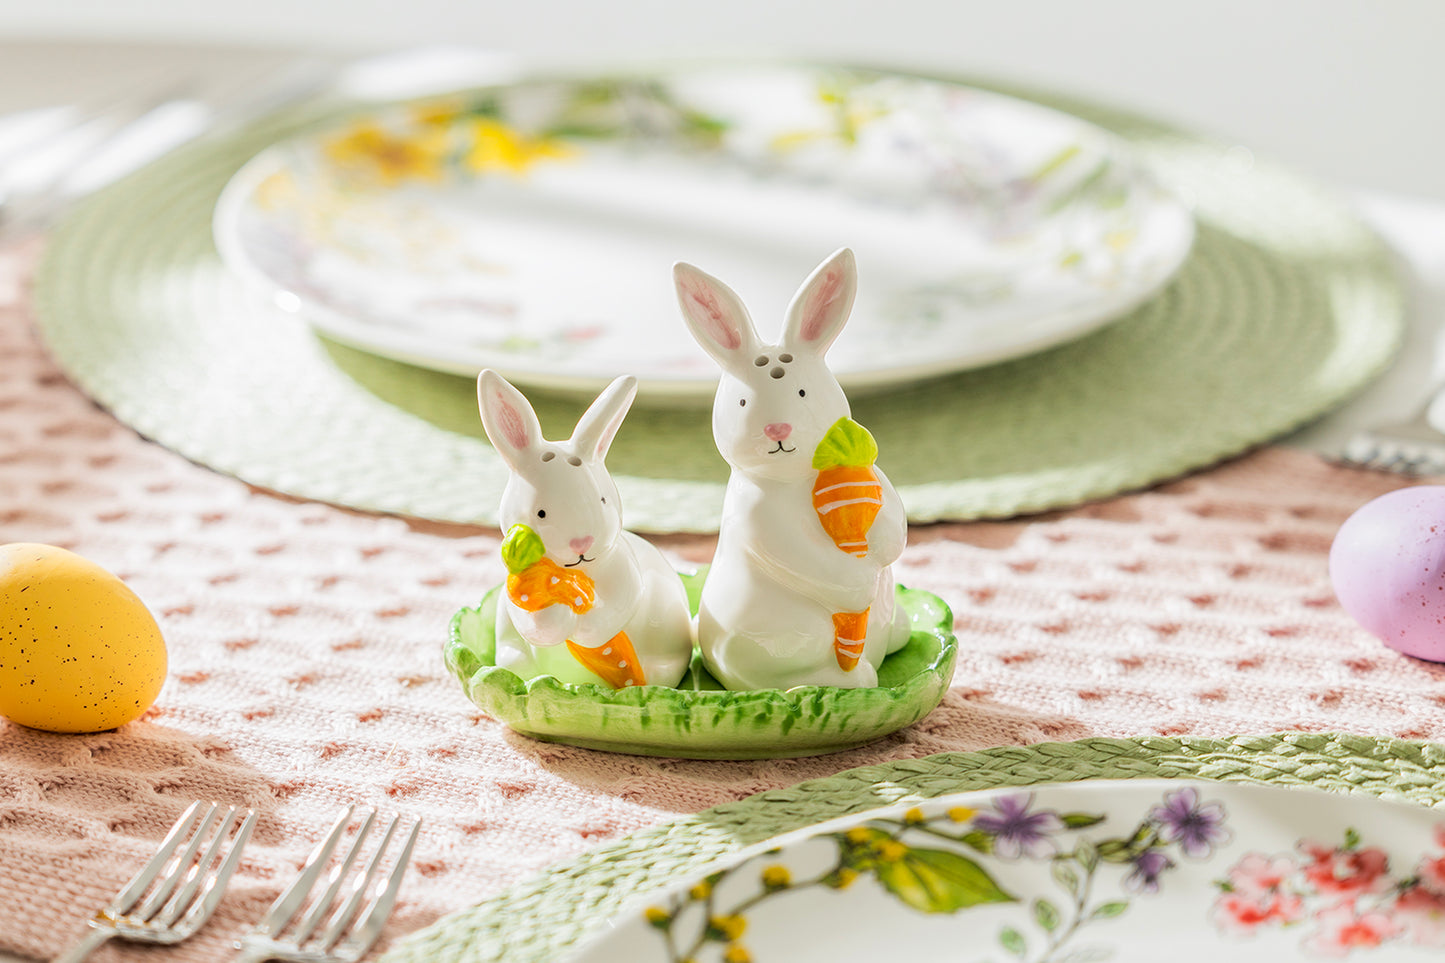 Gift Boxed Bunny Carrot Figurine Ceramic Salt and Pepper Shaker Set